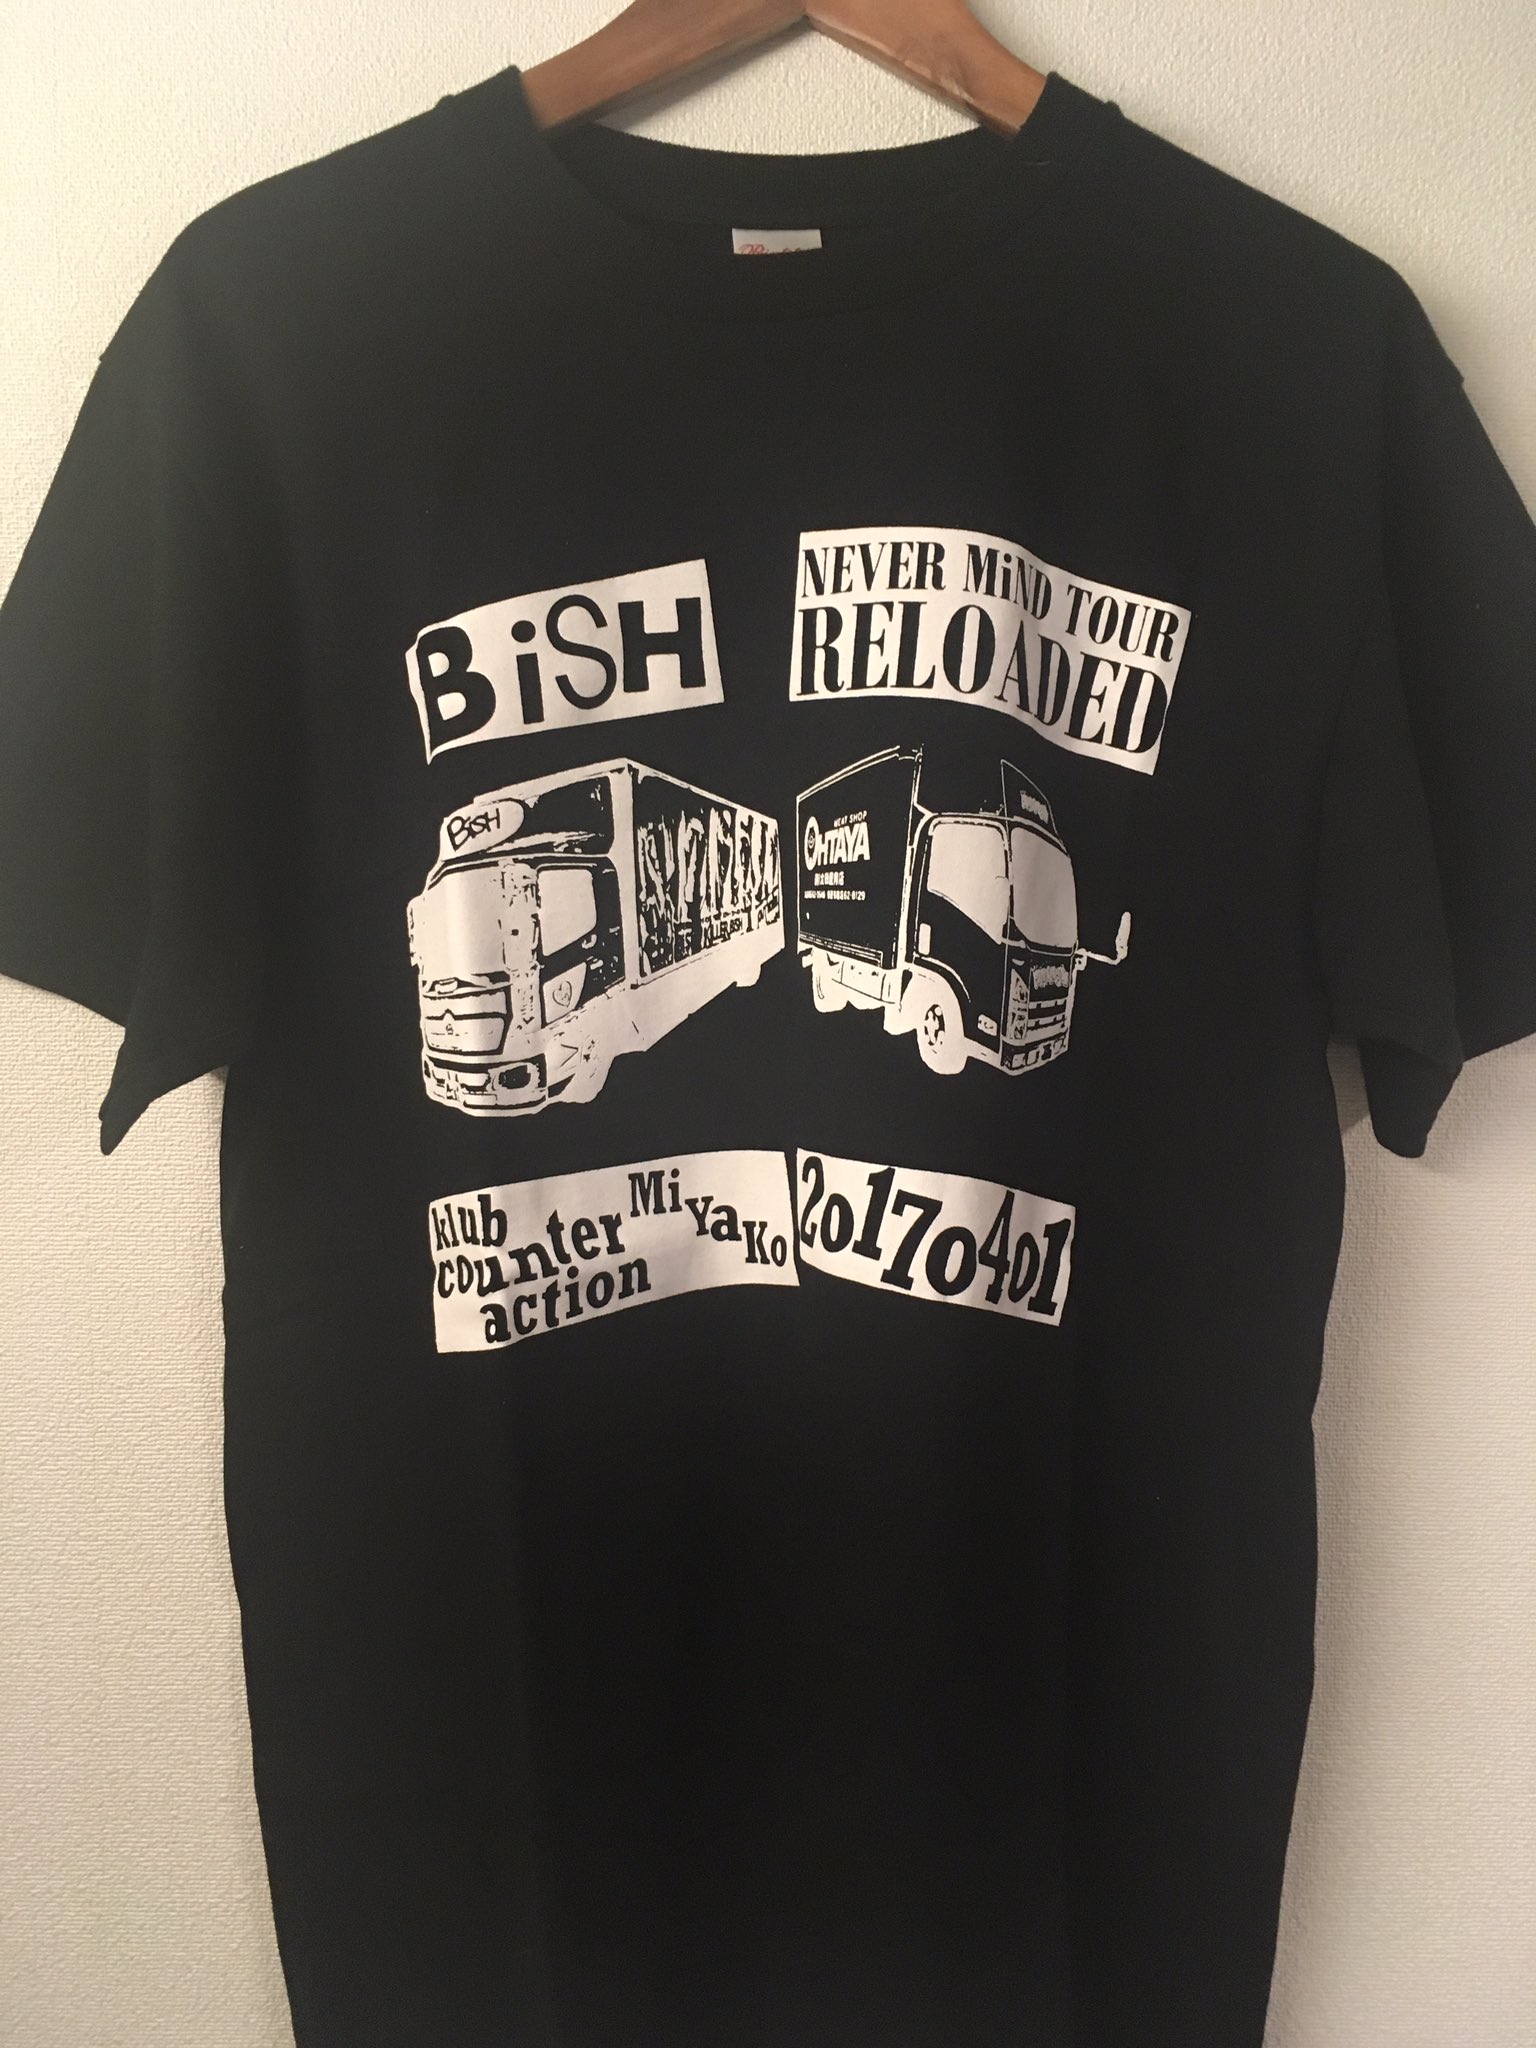 BiSH関連Tシャツまとめ (@Tshirts_BiSH) / Twitter